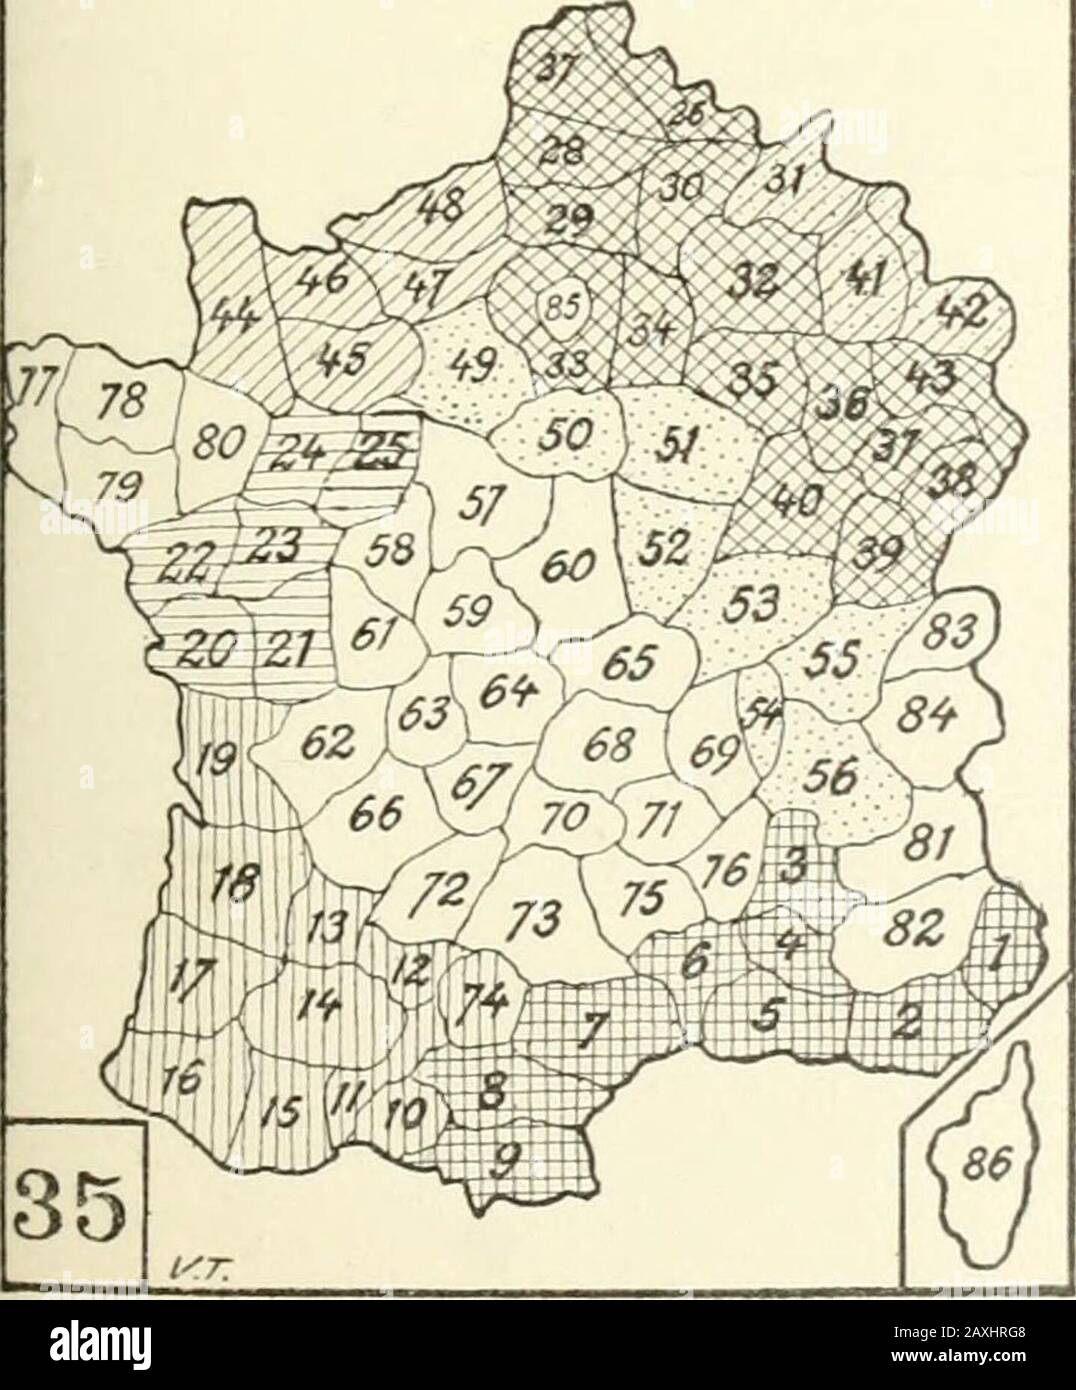 Le crime, causes et remèdes . REGIONI ETNICHE délia FRANCIA e DIPARTIMENTI. /ANTICA PROV. ROMÀNA: i) Alpes Malitl-raes - 2) Var - 3) Drome • 4) Vaucluse . 5)Bouches du Rhône • 6) Gard • 7) Hérault •81 Ande - 9) Pyrénées Orientales.JAQUITANIA: 10) Ariège • 11) H. Garonne •12) Tarn Garonne -13) Lot Garonne - 14) Gers• i5) H. Pyren - 16) B. Pyren • 17) Landes. - 18) Gironde • 19) Charente infér.[BASSA loir A: 20) Vendée .2i}Dena Sèvres• 22) Loire inf. • 28) Maine Loire • 24) Ma-yenne - 25) Sarthe.,D1P. CIMRICl : 26) Nord • 37) Pas de Calais .28) Somme - 29) Oise • 3cj) Aisne . Si) Ar-dennes - 32) Stock Photo